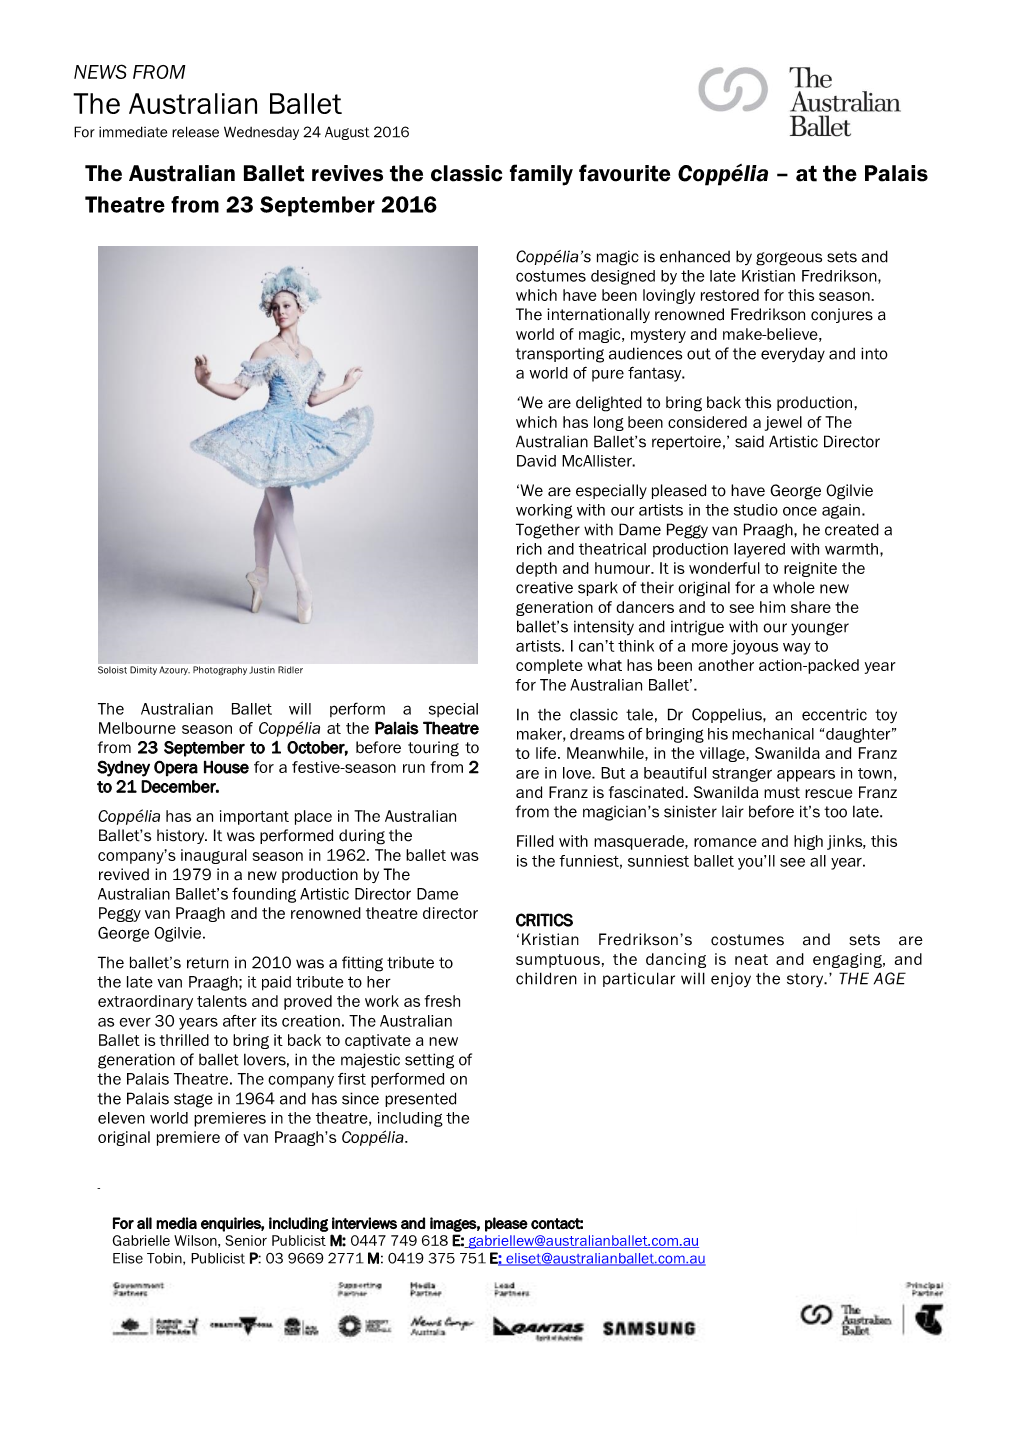 The Australian Ballet for Immediate Release Wednesday 24 August 2016